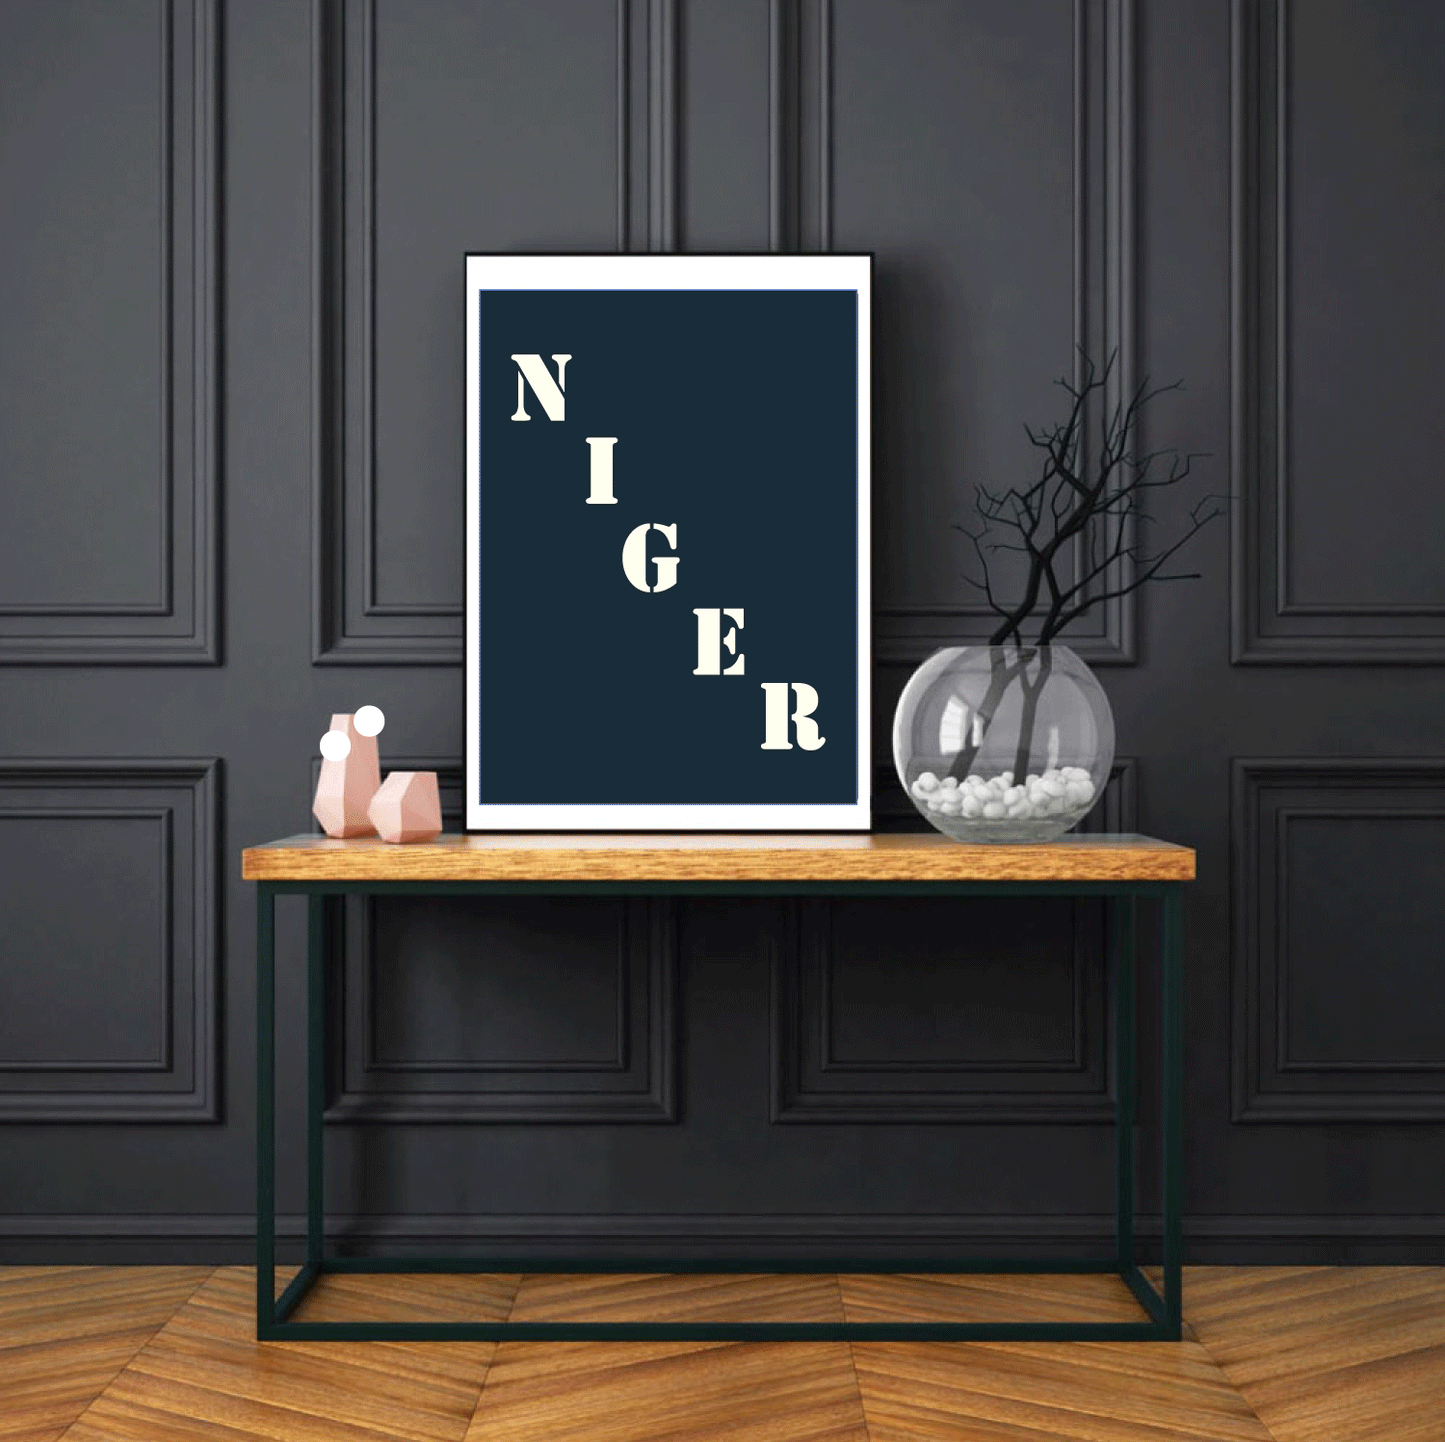 Affiche "Niger" bleu nuit